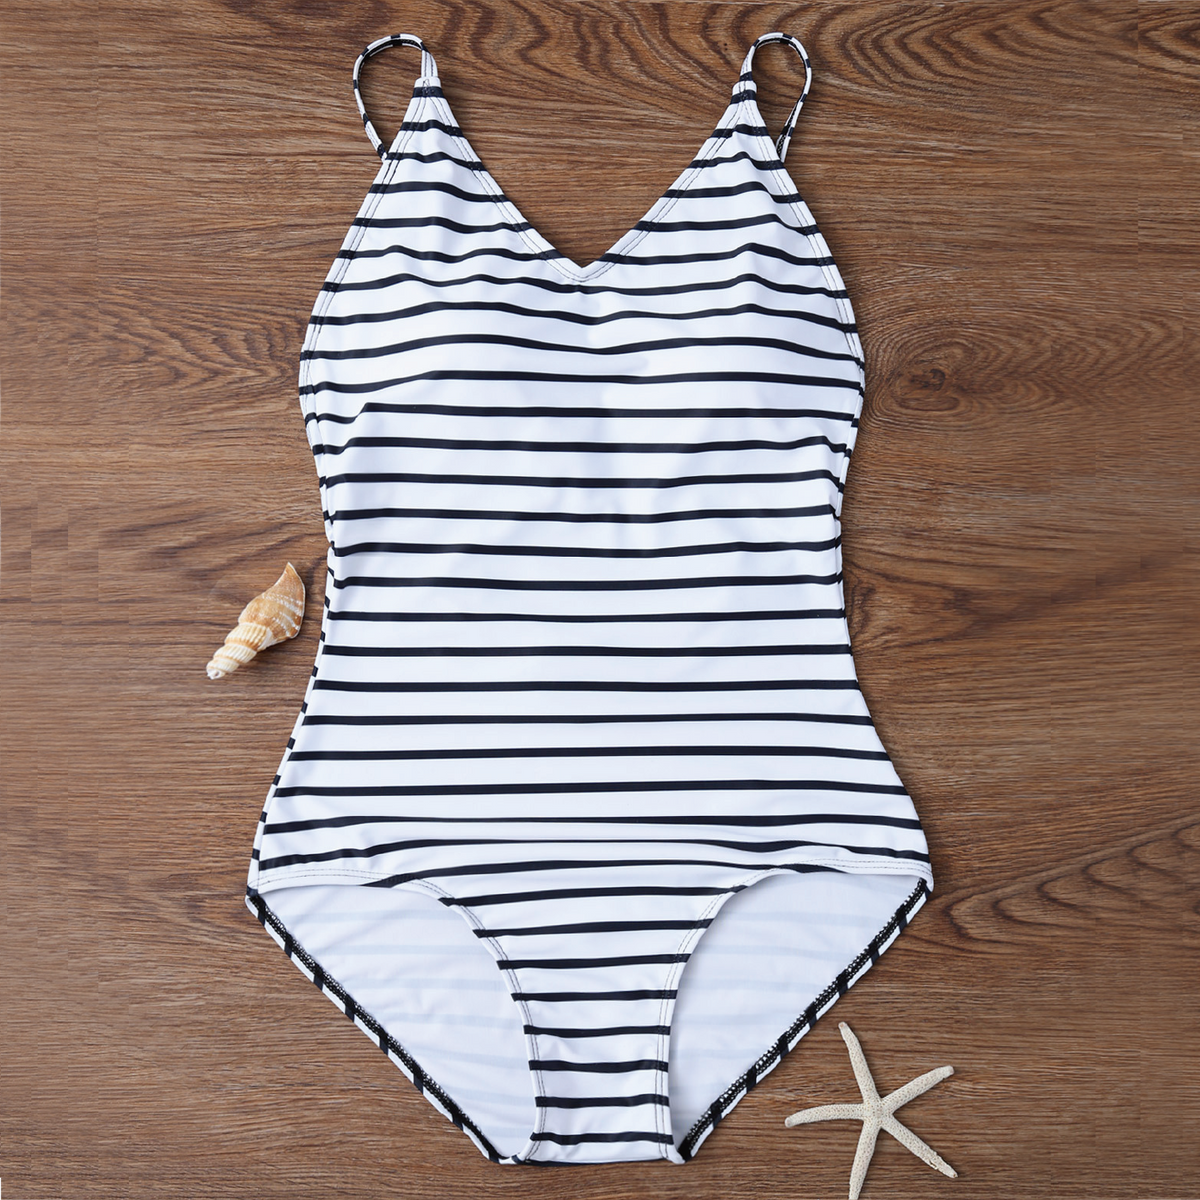 Modest One Piece Swimwear - Buy Black White Striped One Piece